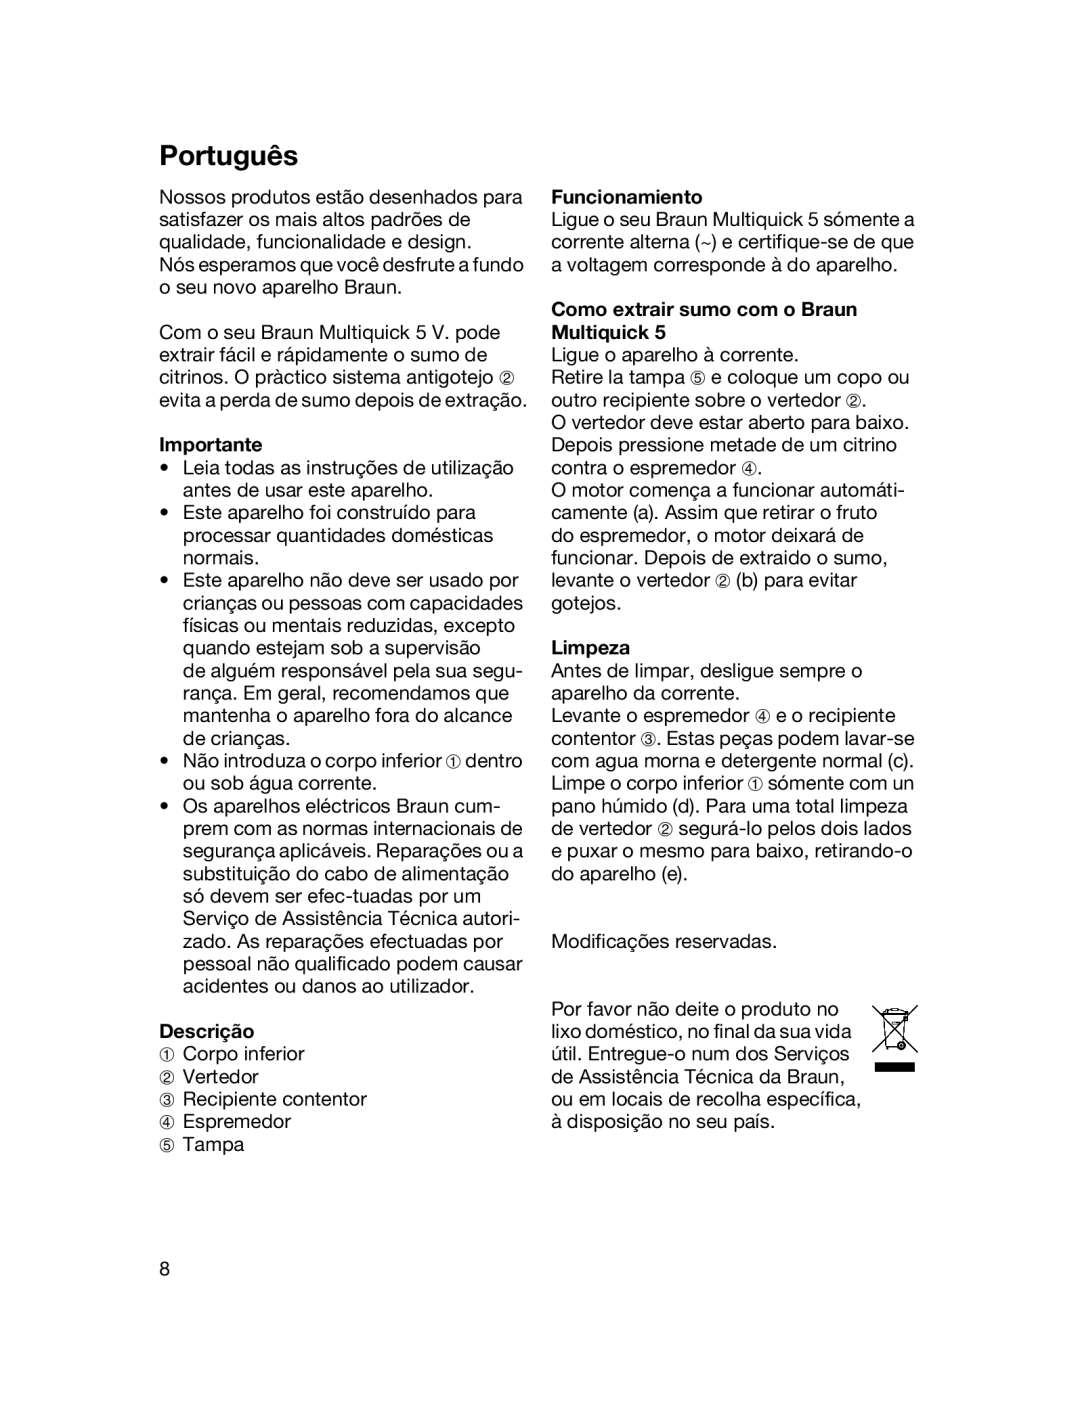 Braun MPZ 22 manual Português, Importante, Descrição, Funcionamiento, Como extrair sumo com o Braun Multiquick, Limpeza 